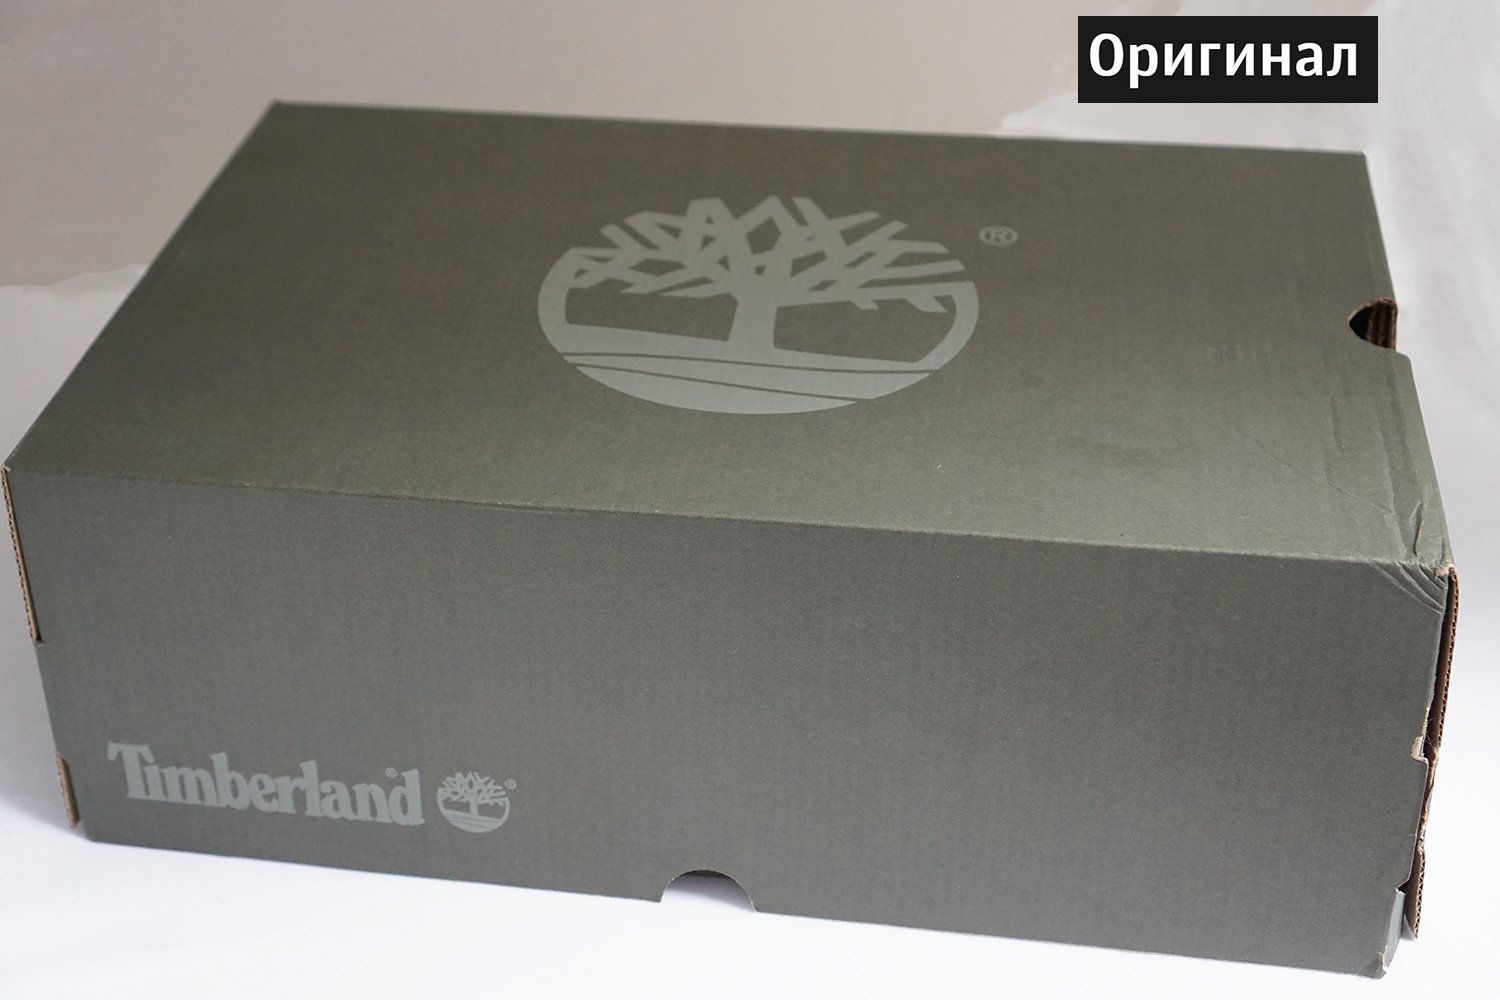 Как отличить оригинал тимберленд от подделки: Как отличить оригинальные Timberland от подделки?